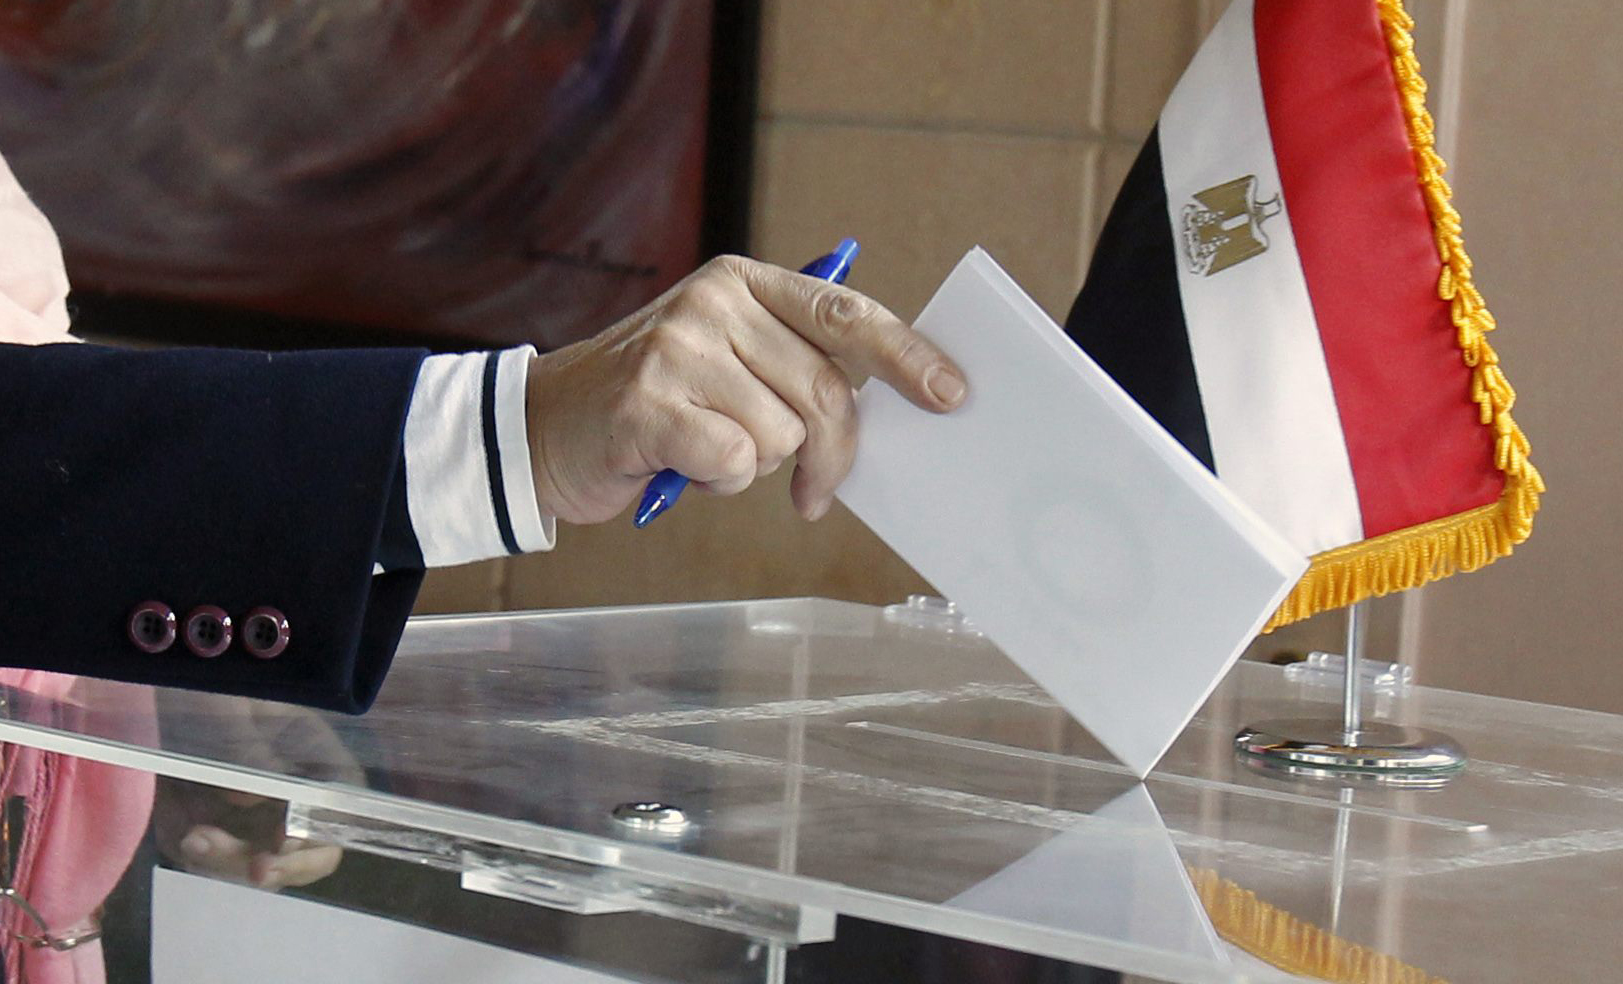 الهيئة الوطنية للانتخابات المصرية ستعلن اليوم عن نتائج الإستفتاء